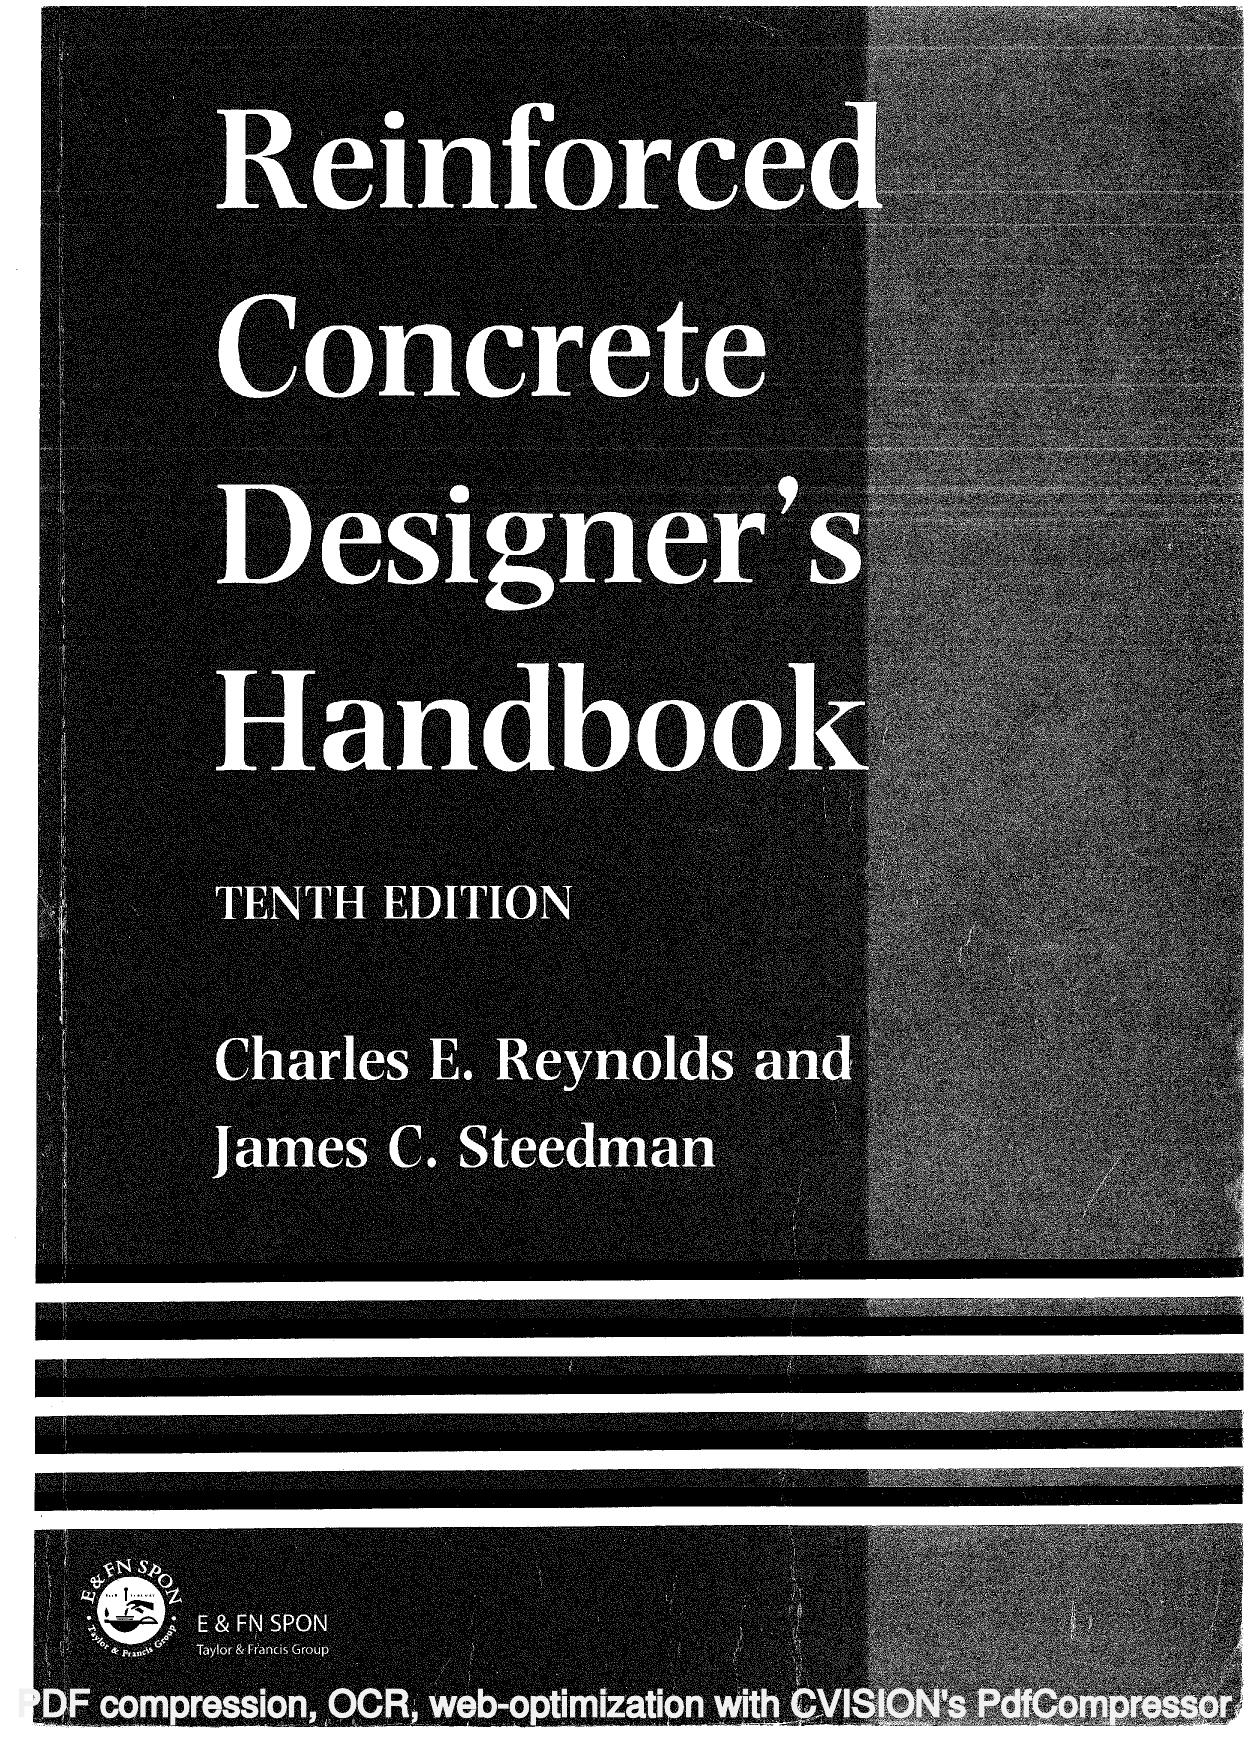 Reinforced Concrete Designer's Handbook 1999